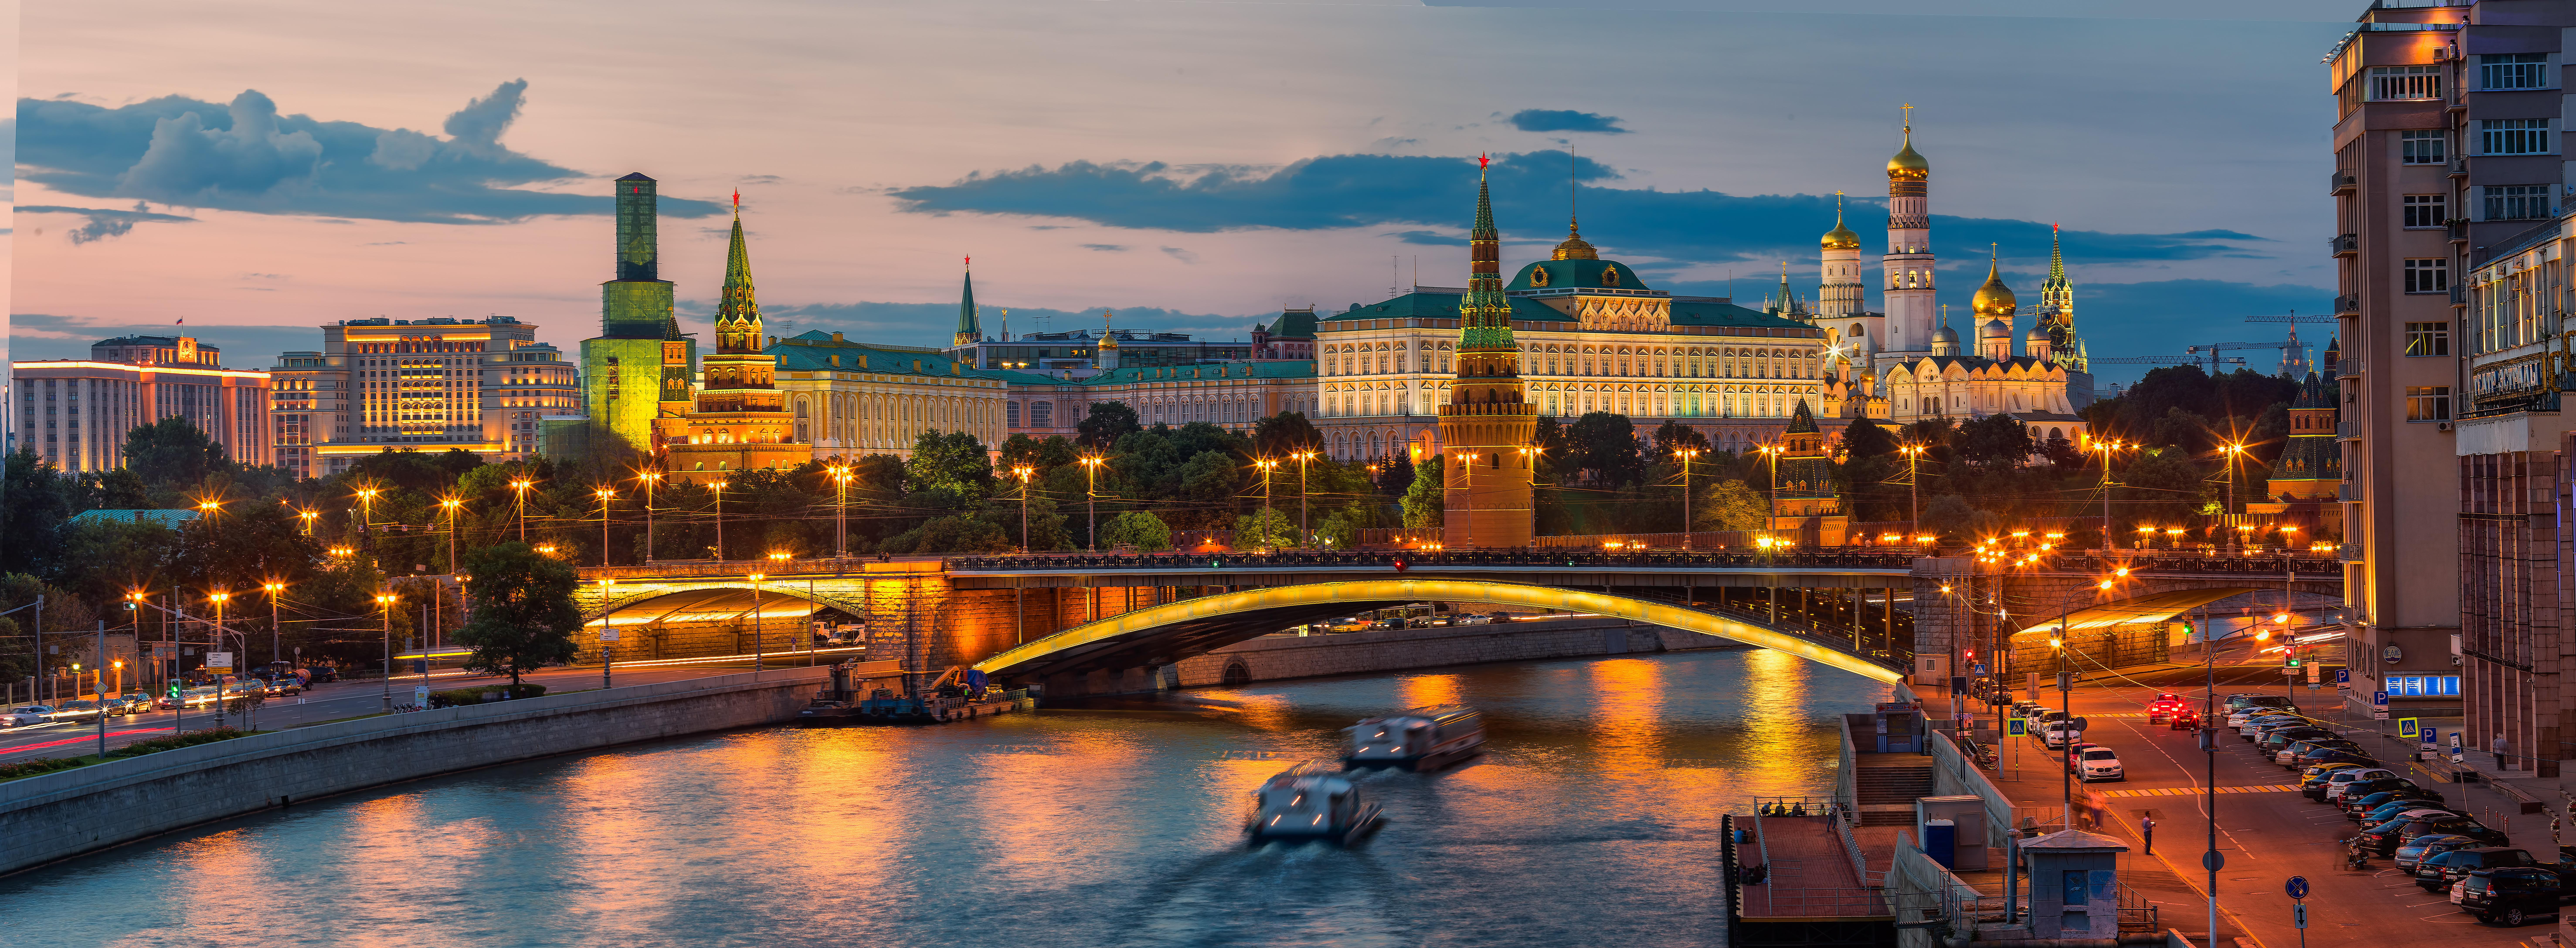 Московский Кремль панорамное изображение